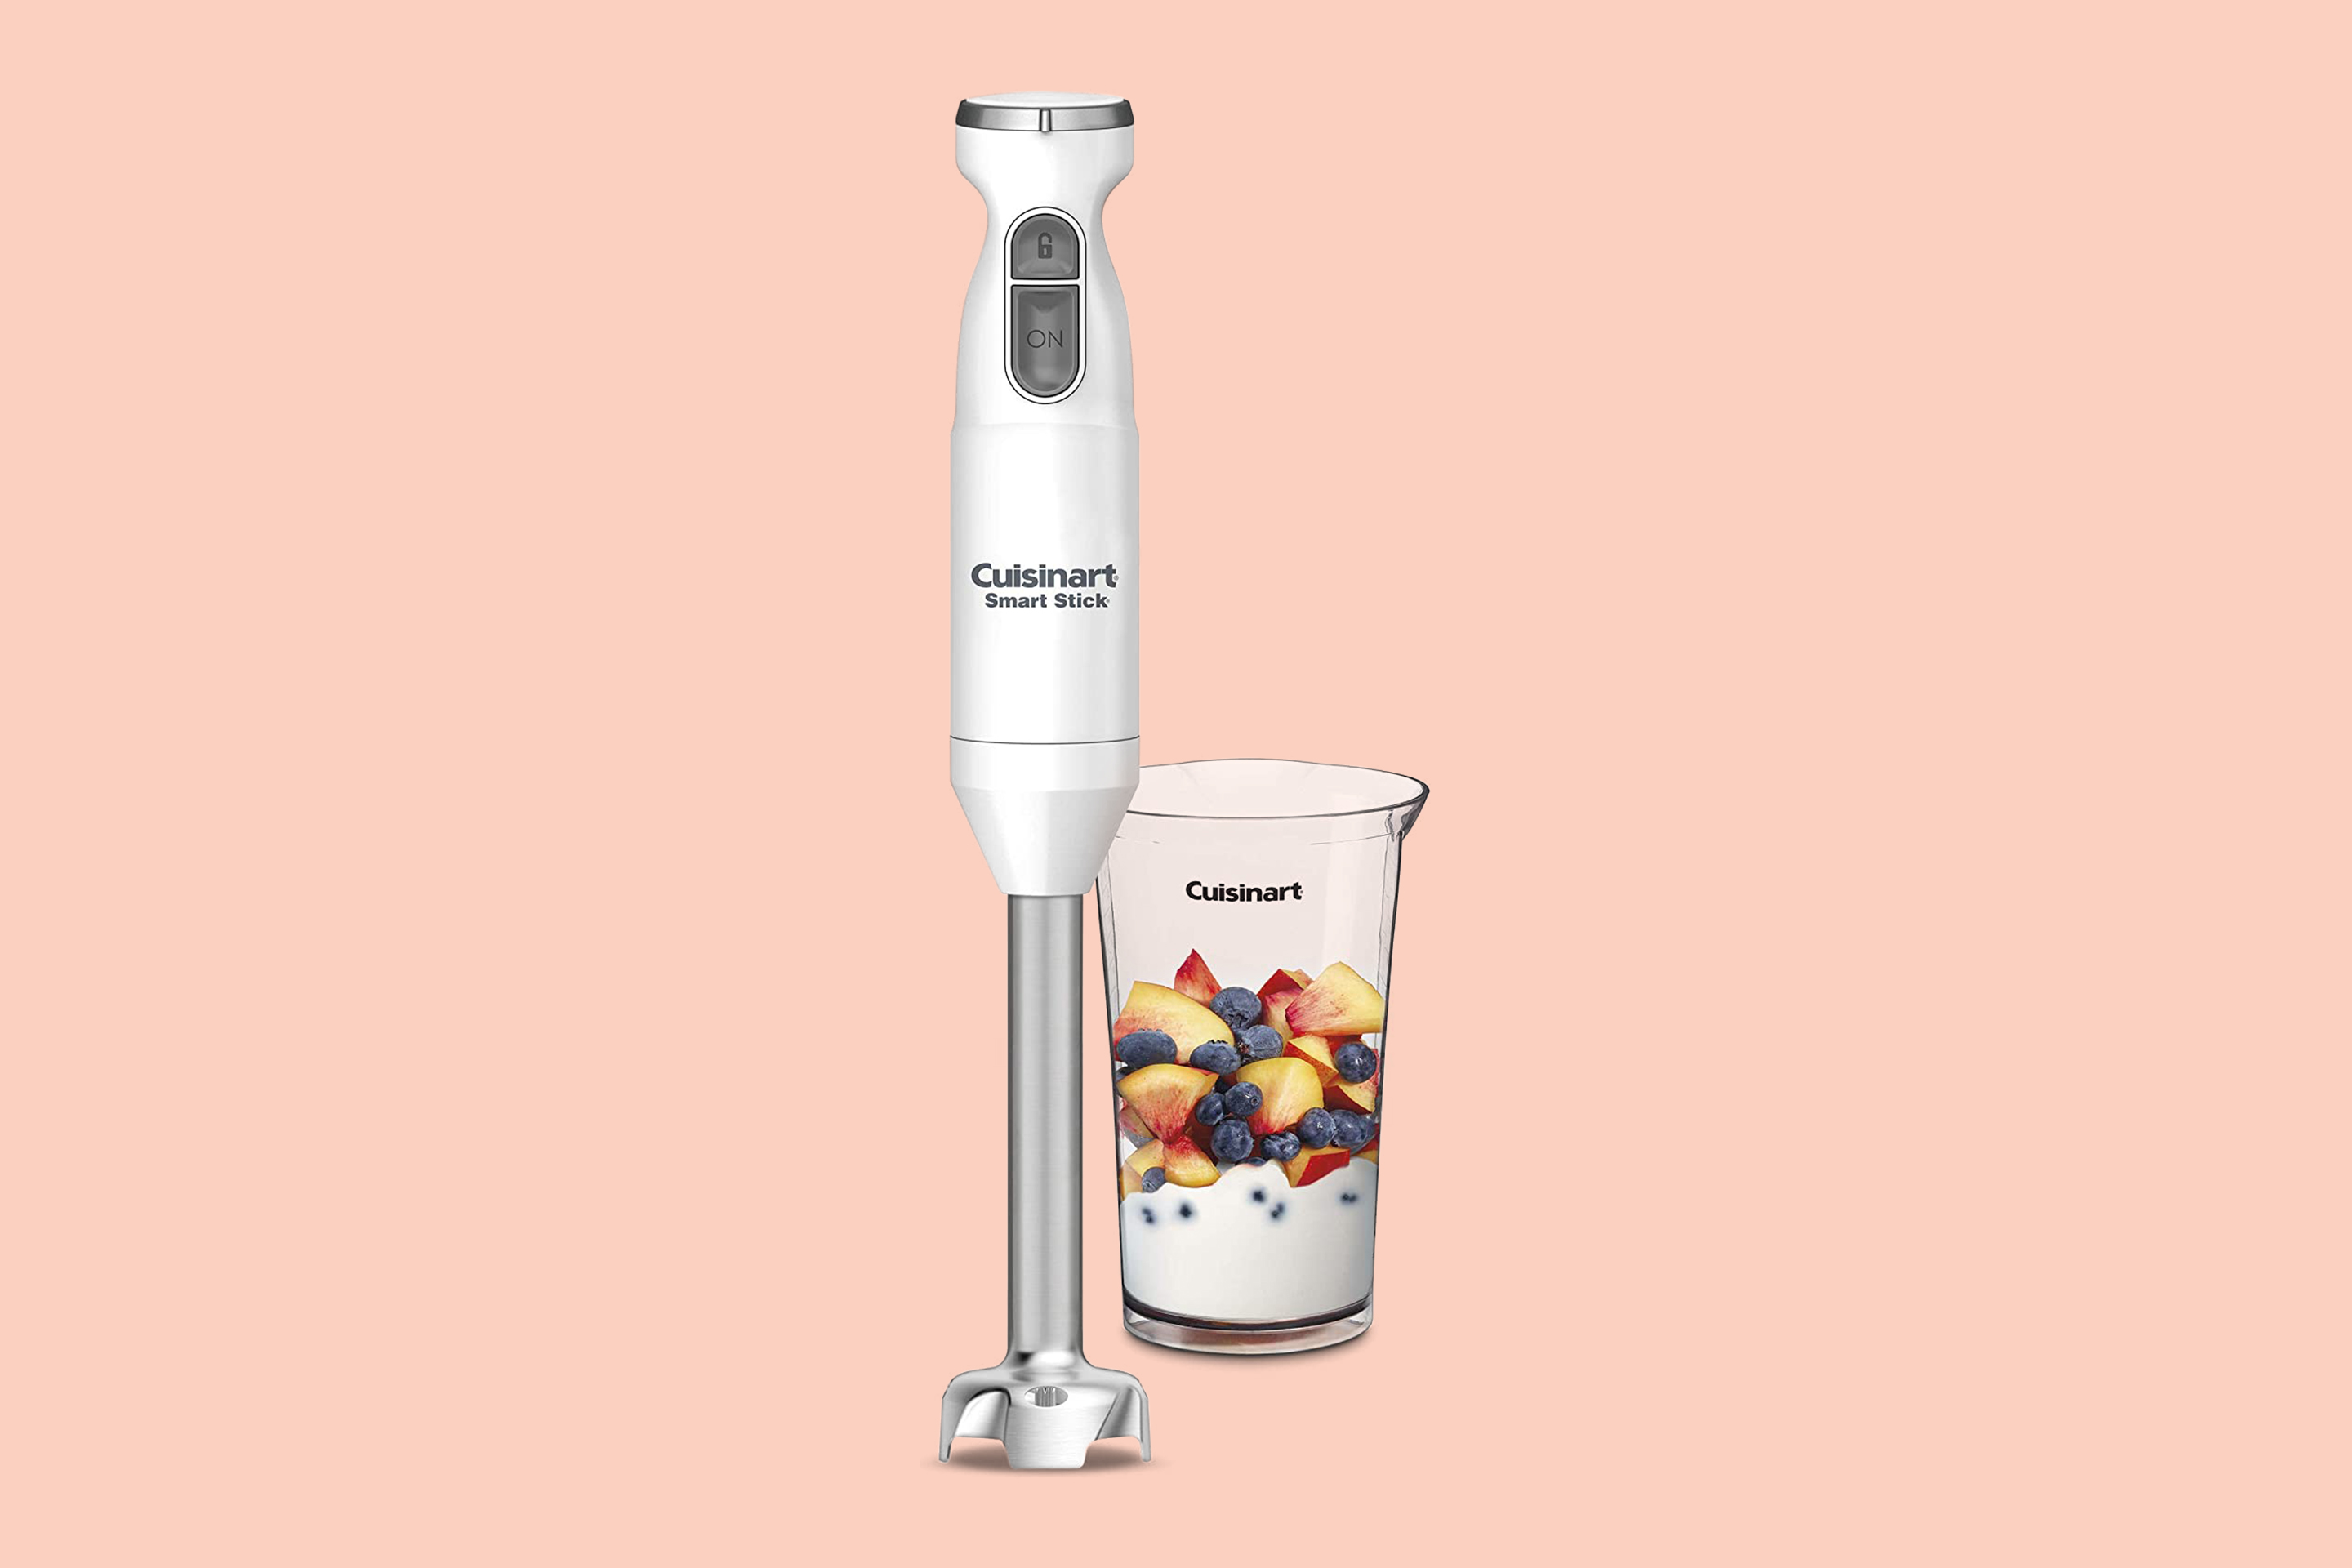 https://img.money.com/2020/08/Cuisinart-Smart-Stick-Hand-Blender.jpg